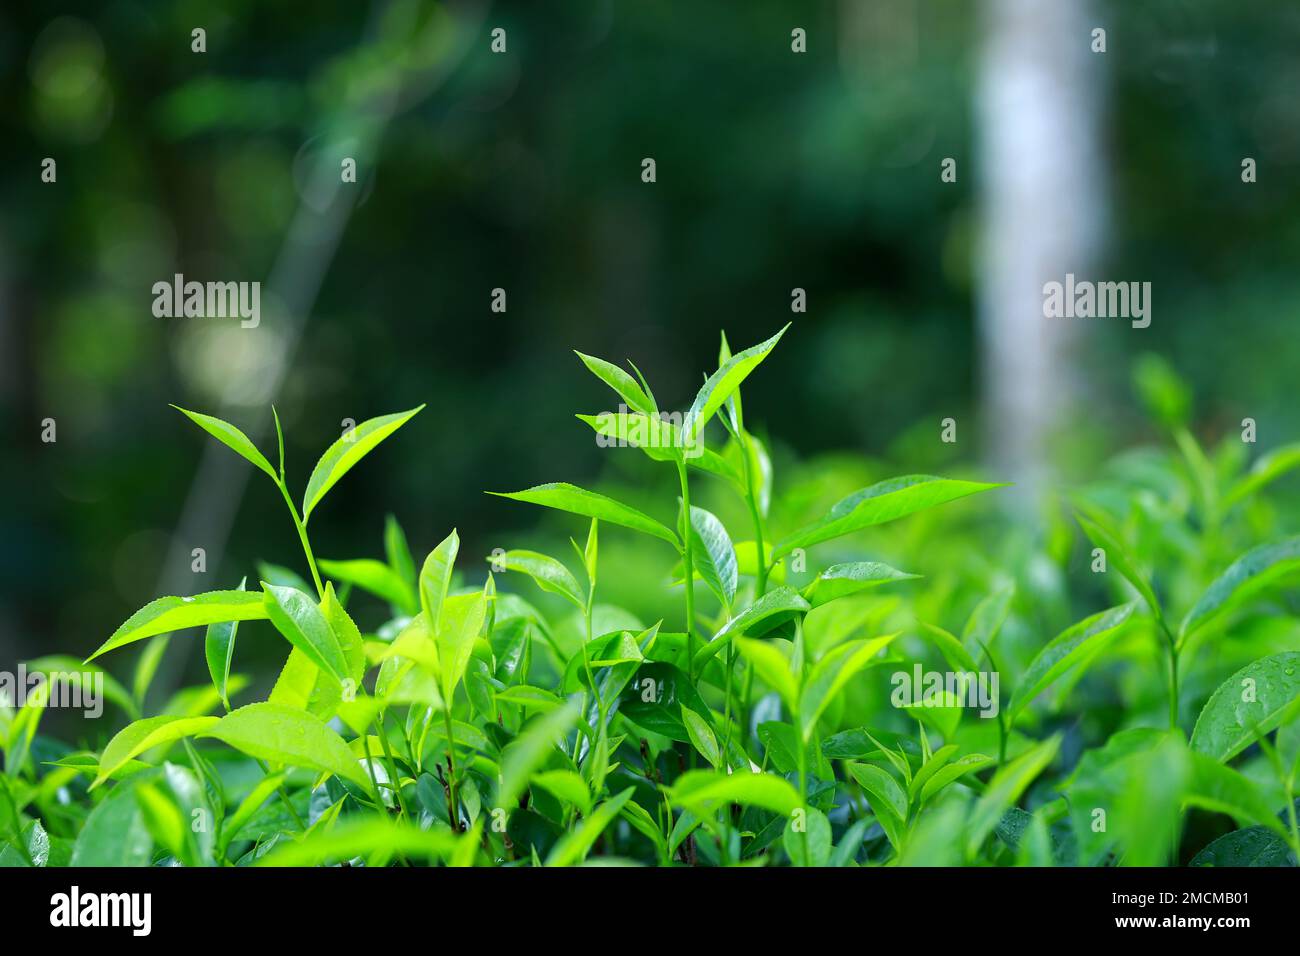 Mangiare foglie di tè verde effetti collaterali immagini e fotografie stock  ad alta risoluzione - Alamy